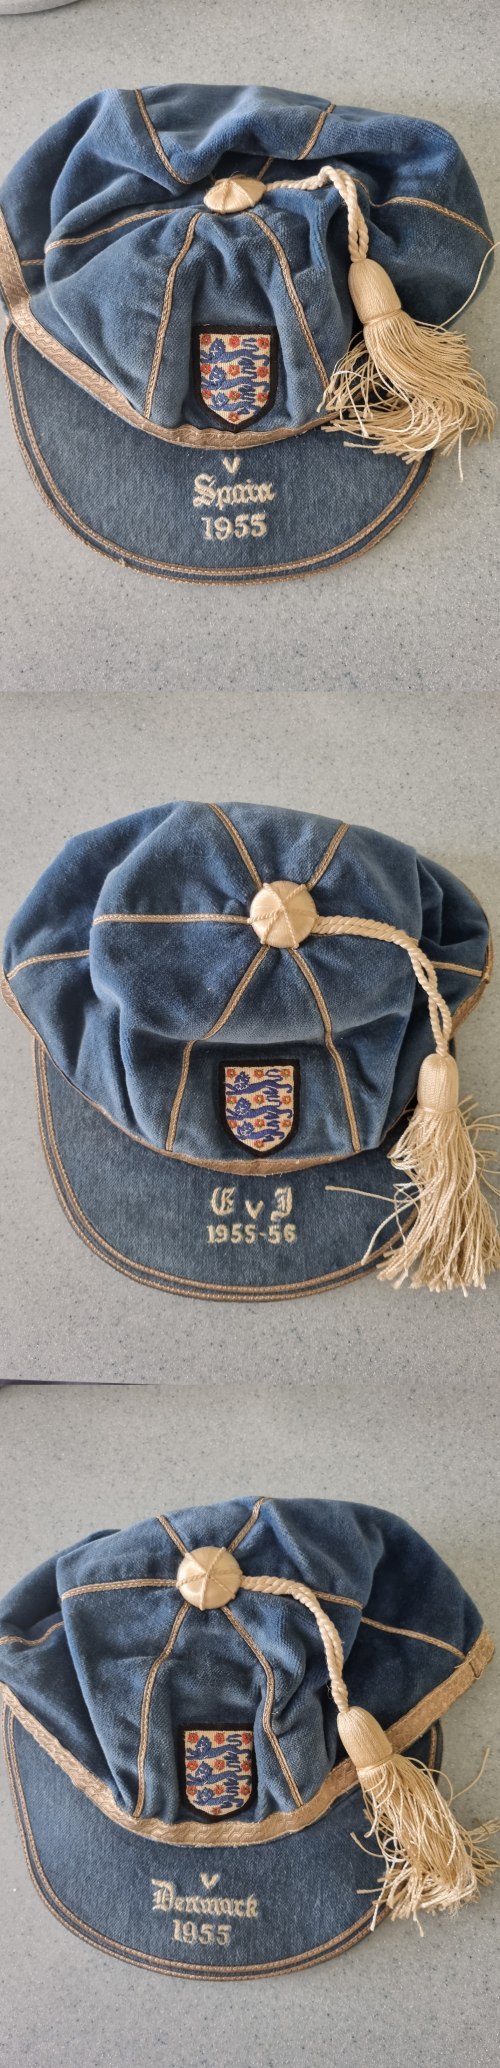 England Caps